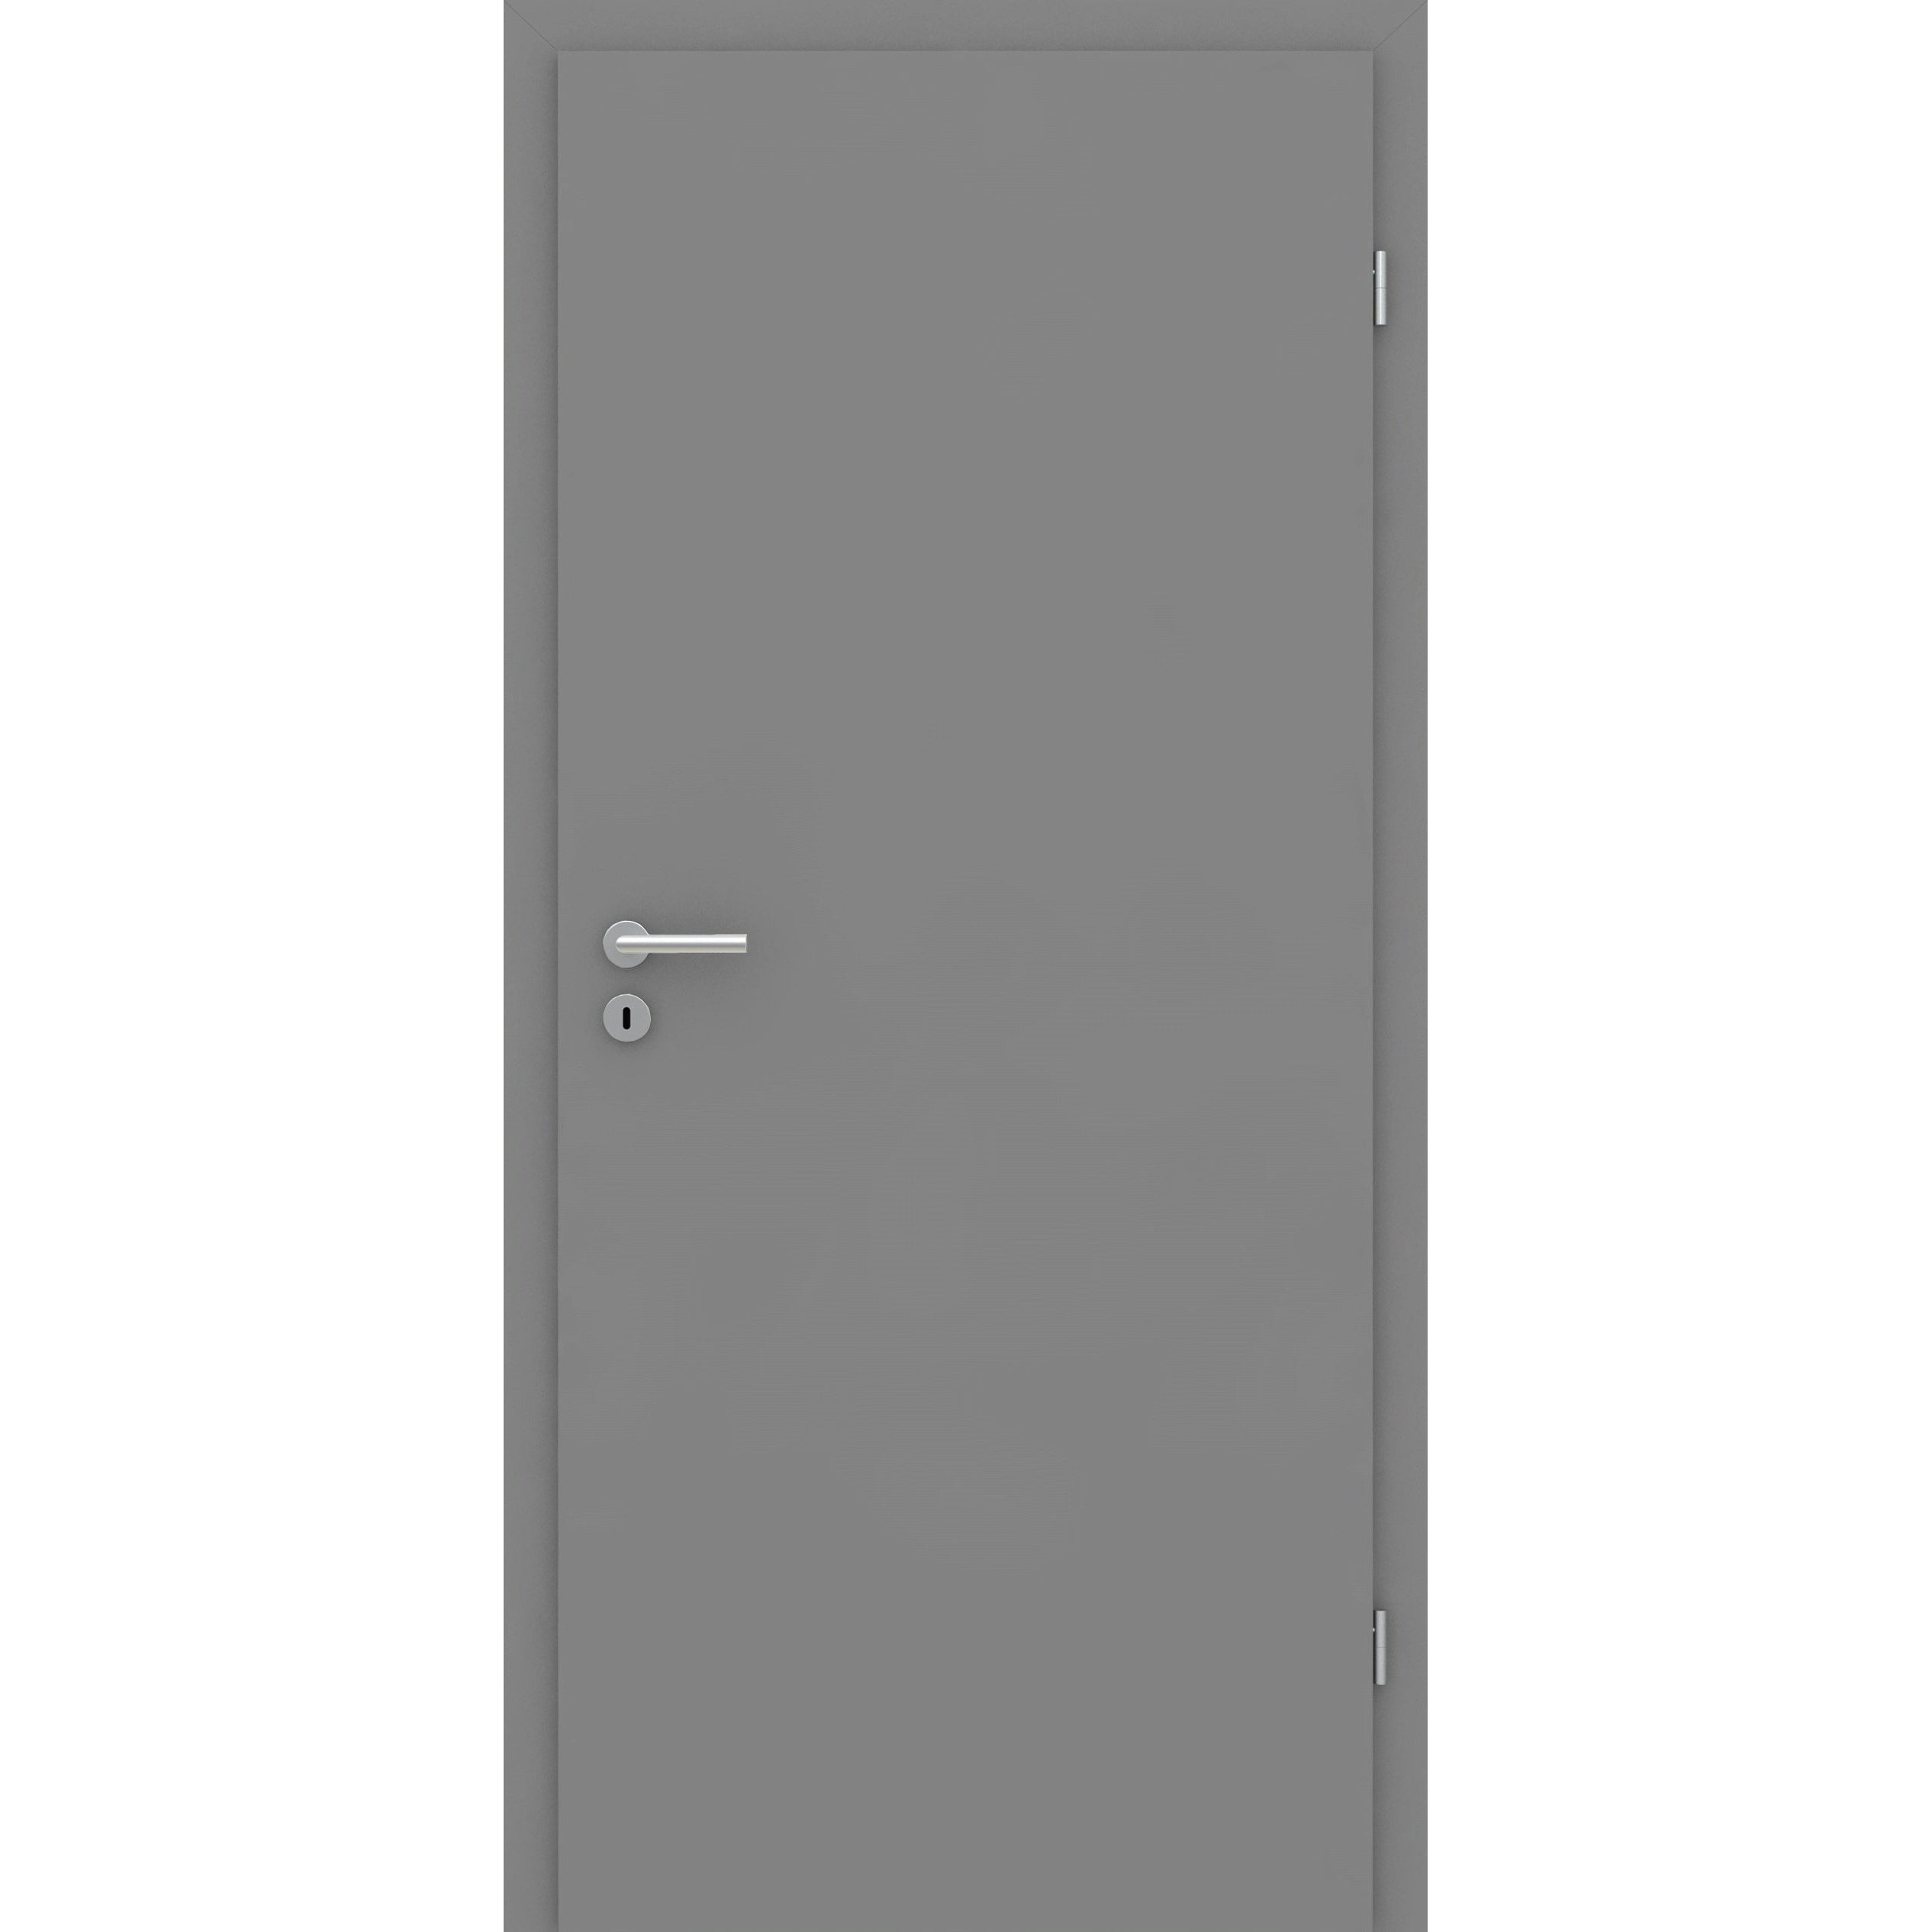 Wohnungseingangstür mit Zarge grau glatt Designkante SK2 / KK3